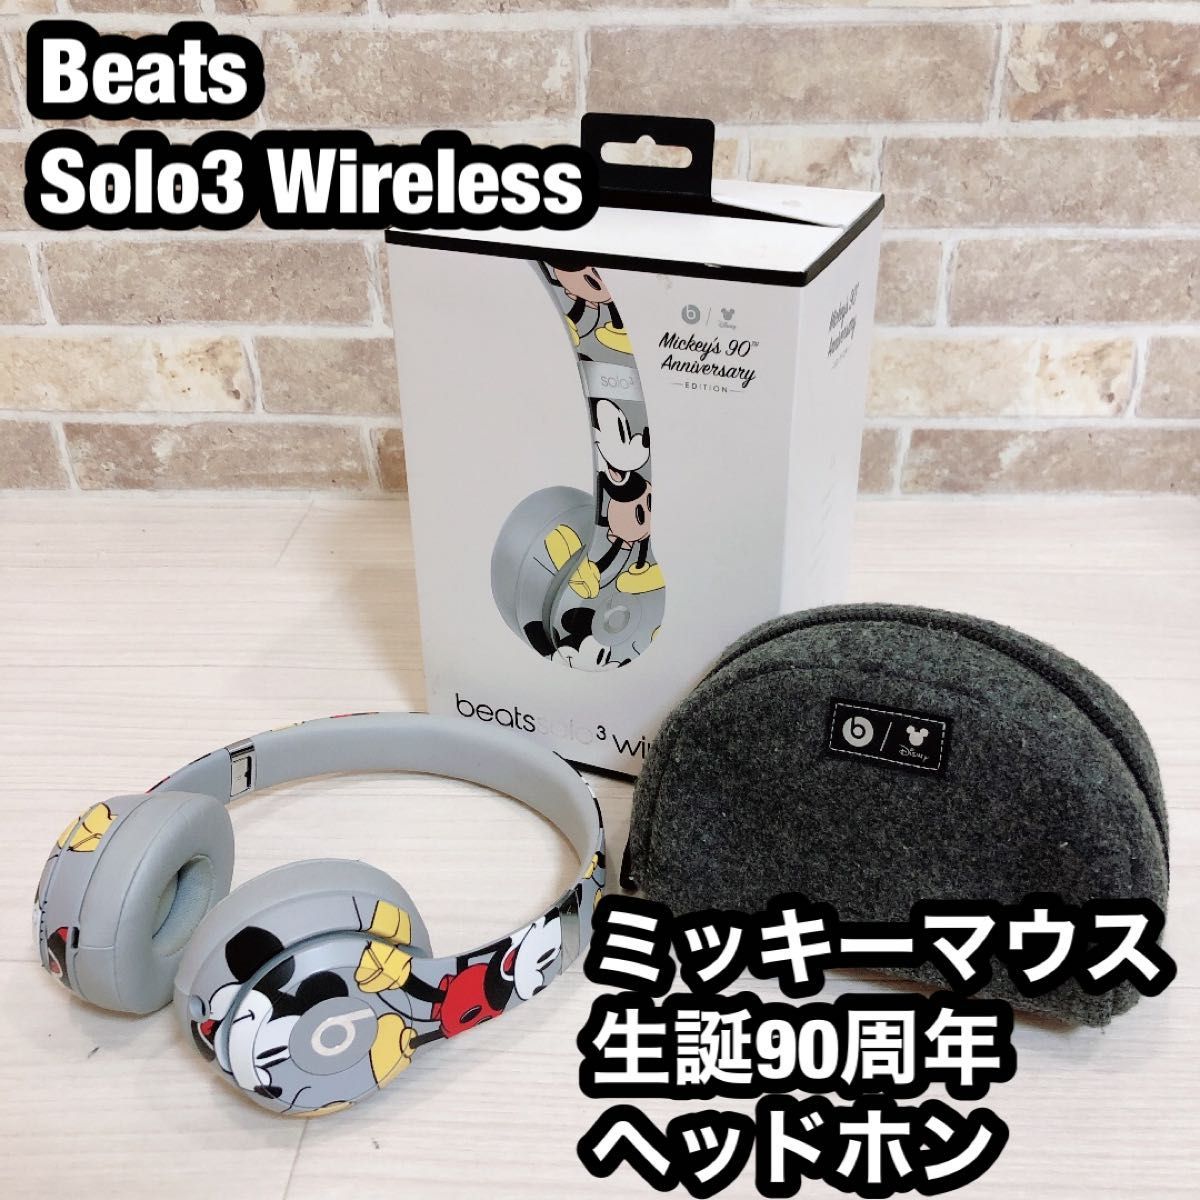 当社の Solo3 Beats Wireless ミッキーマウス生誕90周年